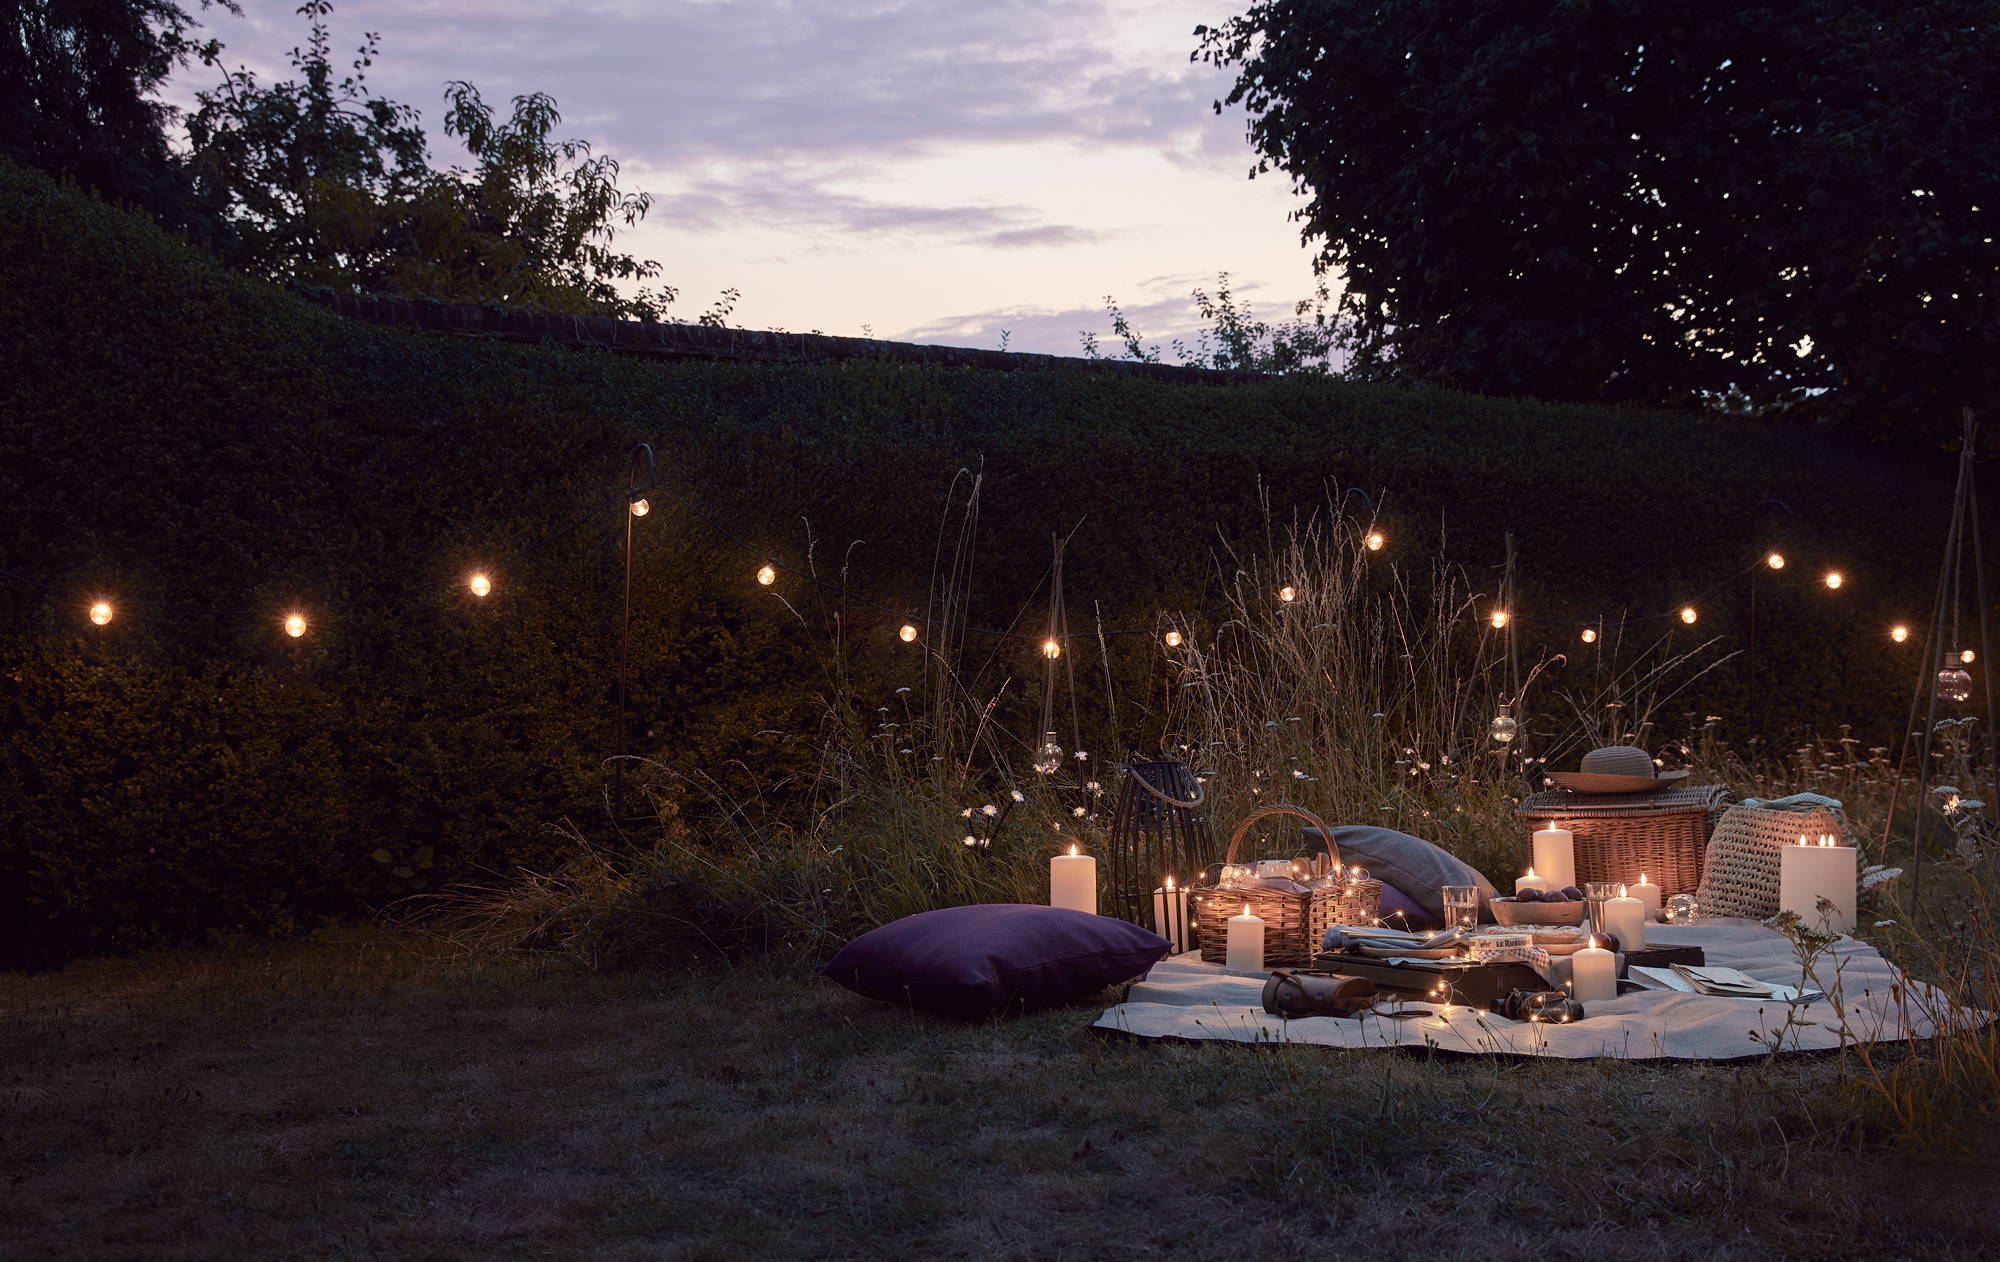 Un pique-nique nocturne en plein air avec des bougies LED, des guirlandes lumineuses et des guirlandes guinguette.